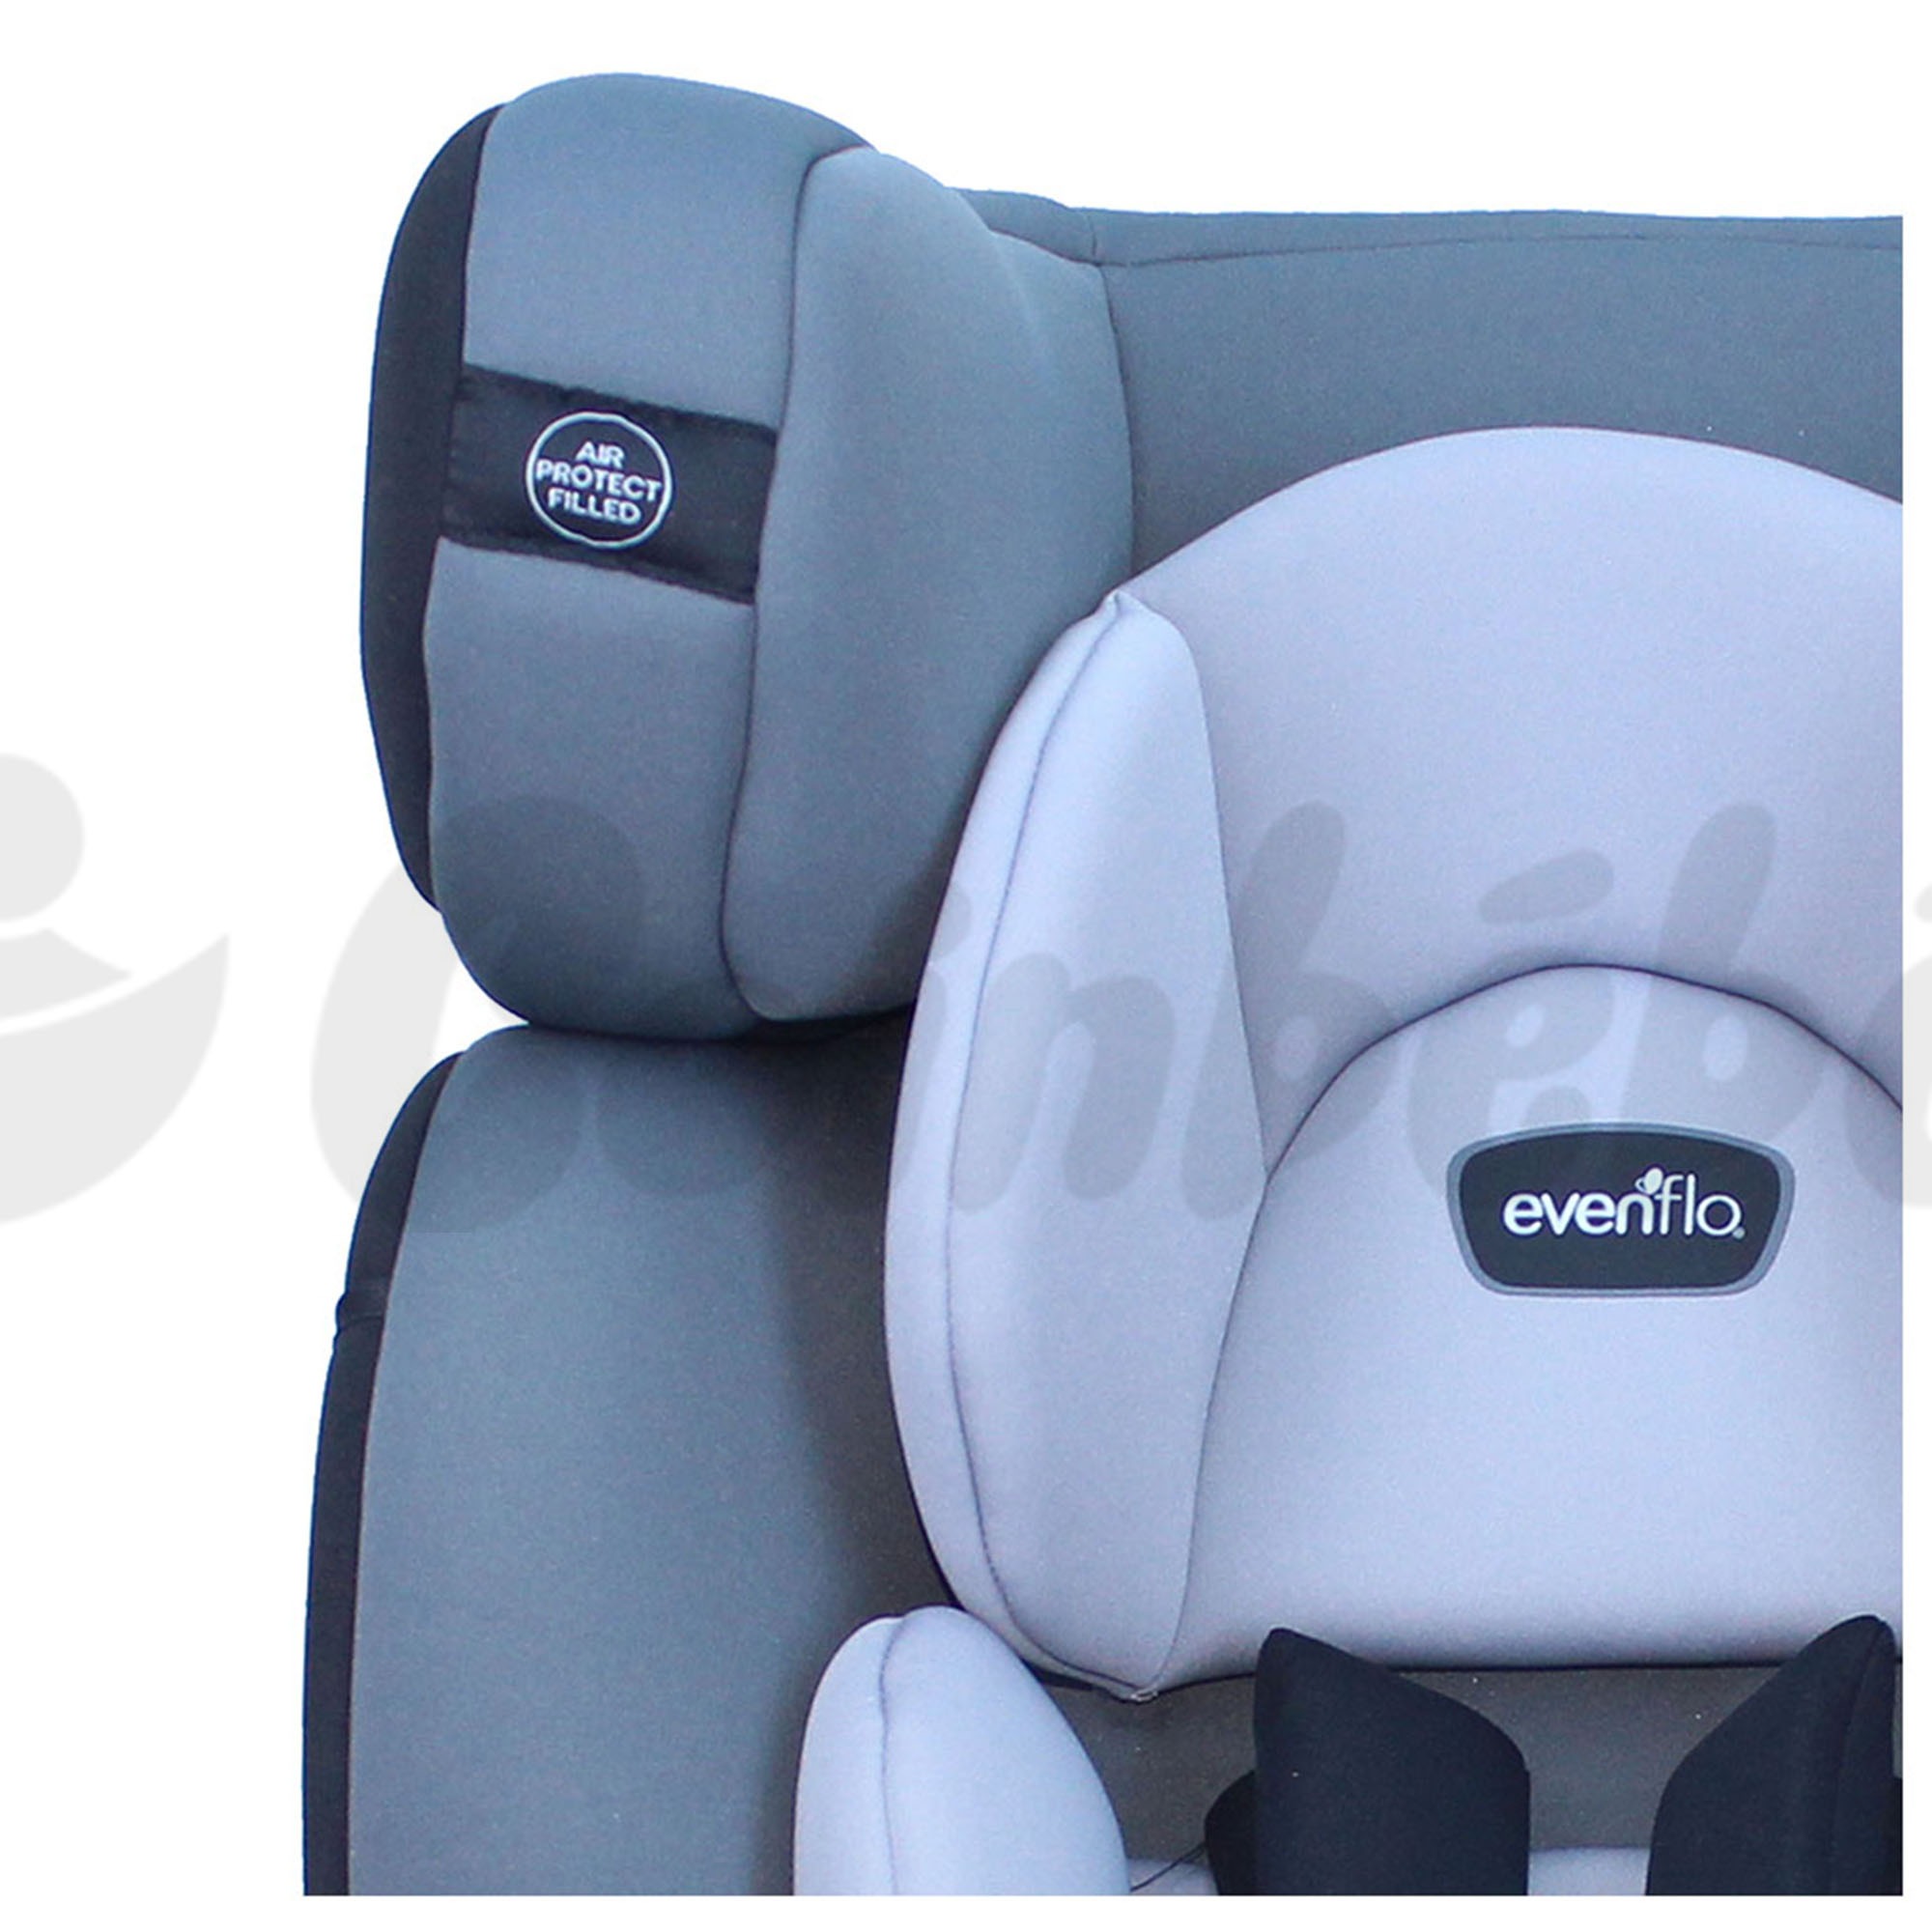 Cosmos Bébé - Le nouveau siège auto Duran d'Evenflo est de retour, il peut  être utilisé de 0 à 6 ans (de 0 à 25 kg). اكتشفوا معنا كرسي السيارة الرائع.  🚛 